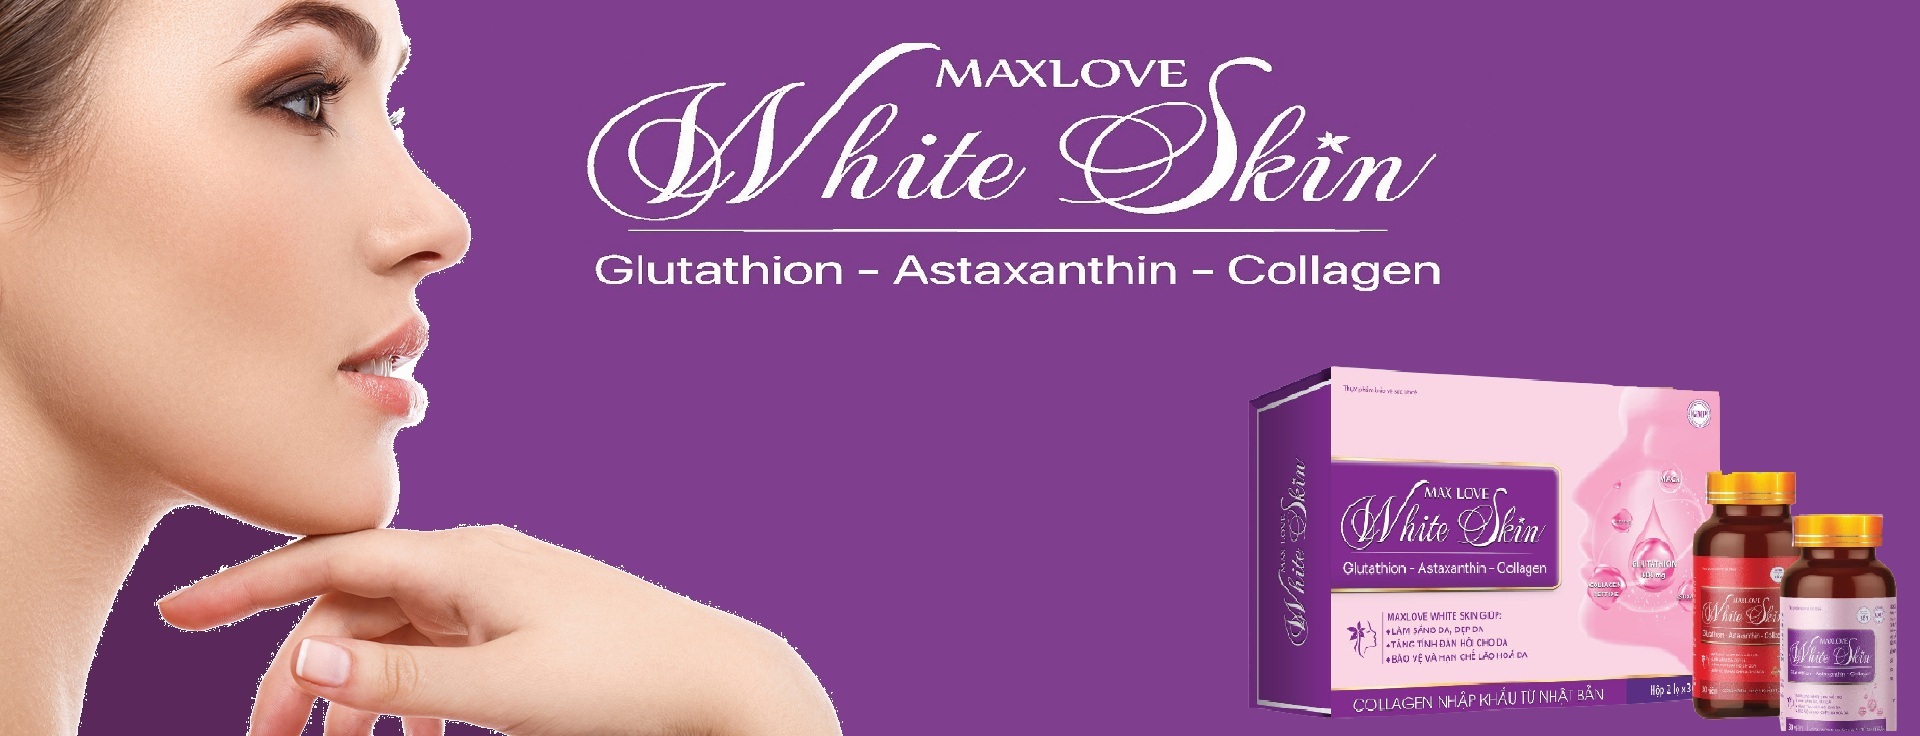 maxlove-white-skin